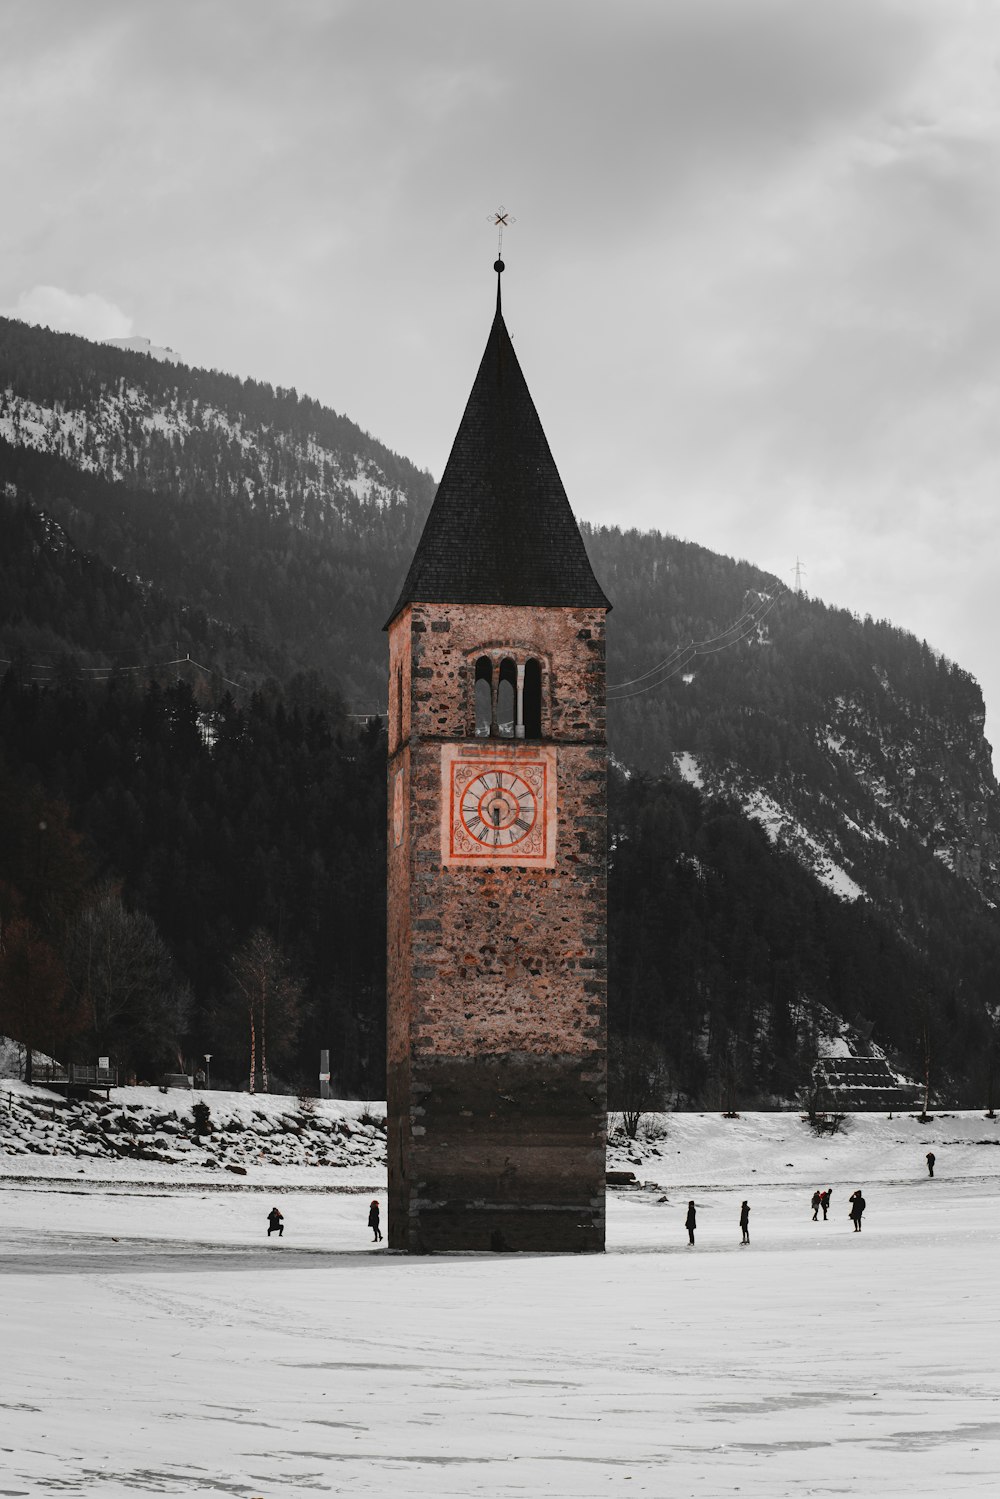 눈 덮인 들판 한가운데에 있는 시계탑